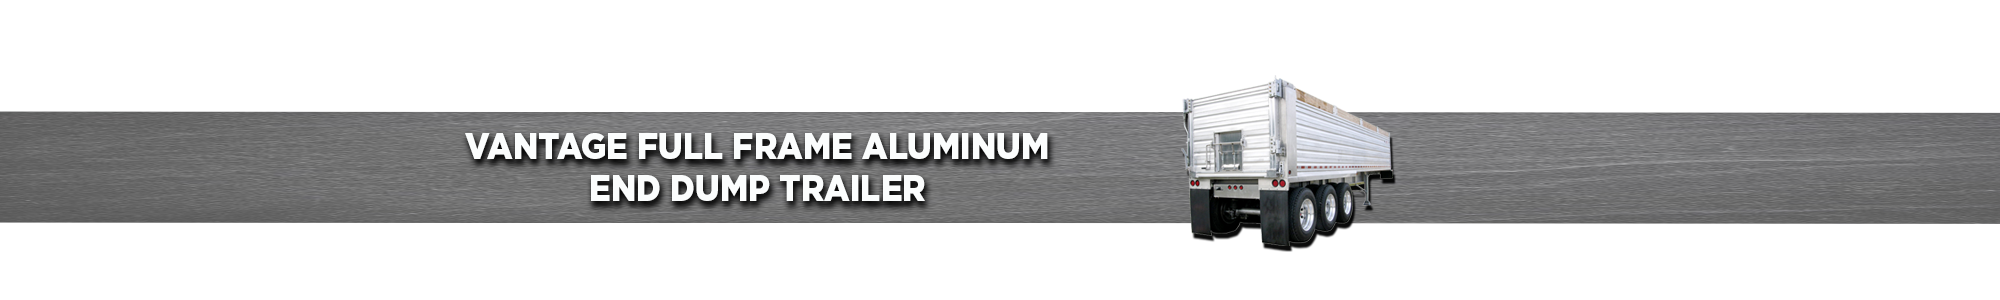 Full Frame Aluminum